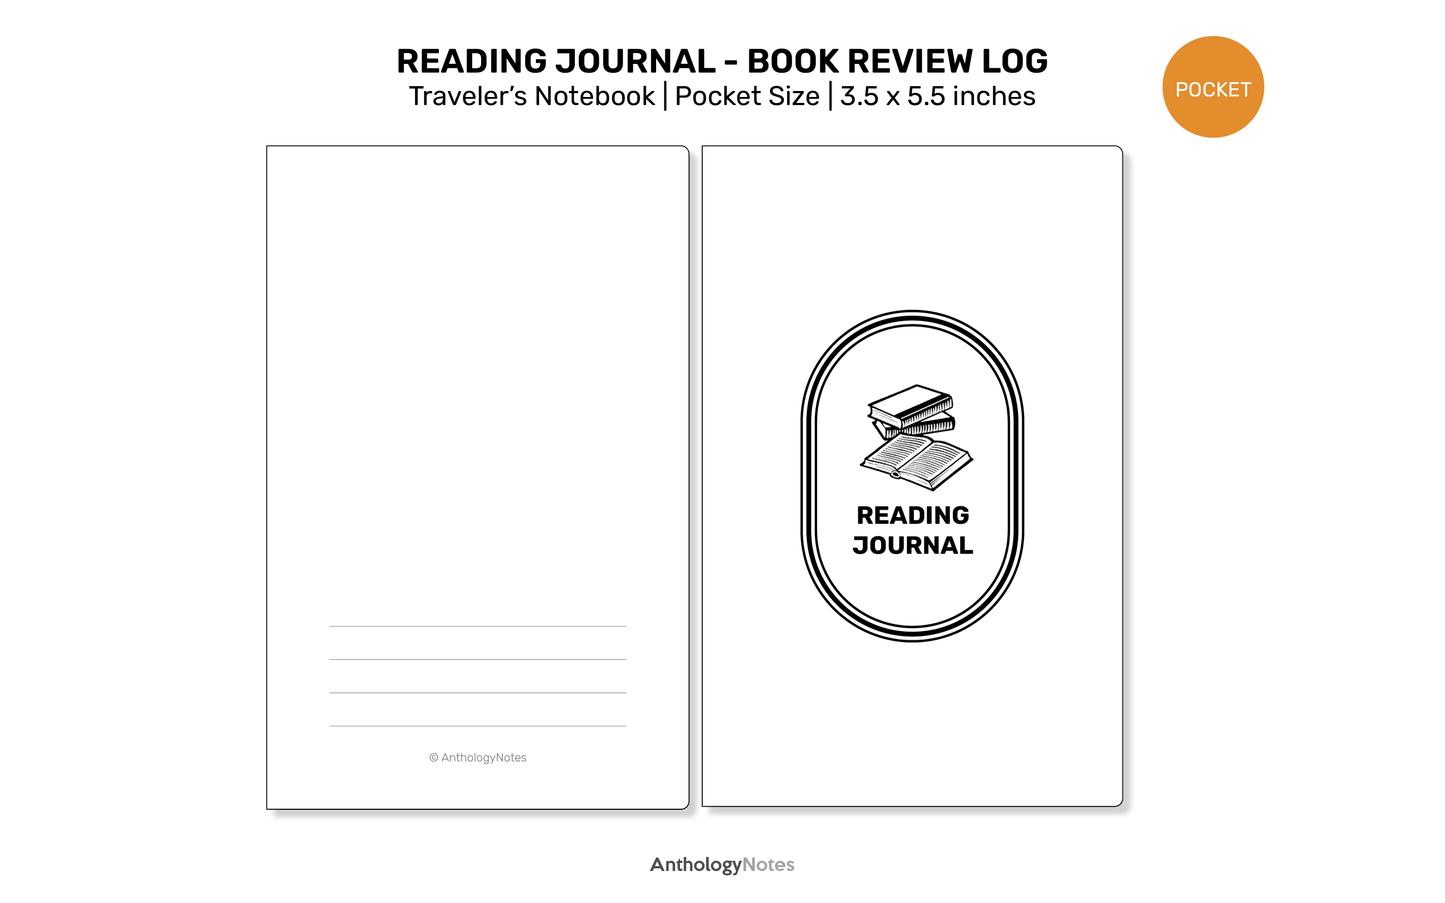 READING Journal TN POCKET Printable Refill Insert for Traveler's Notebook - Book Review Log